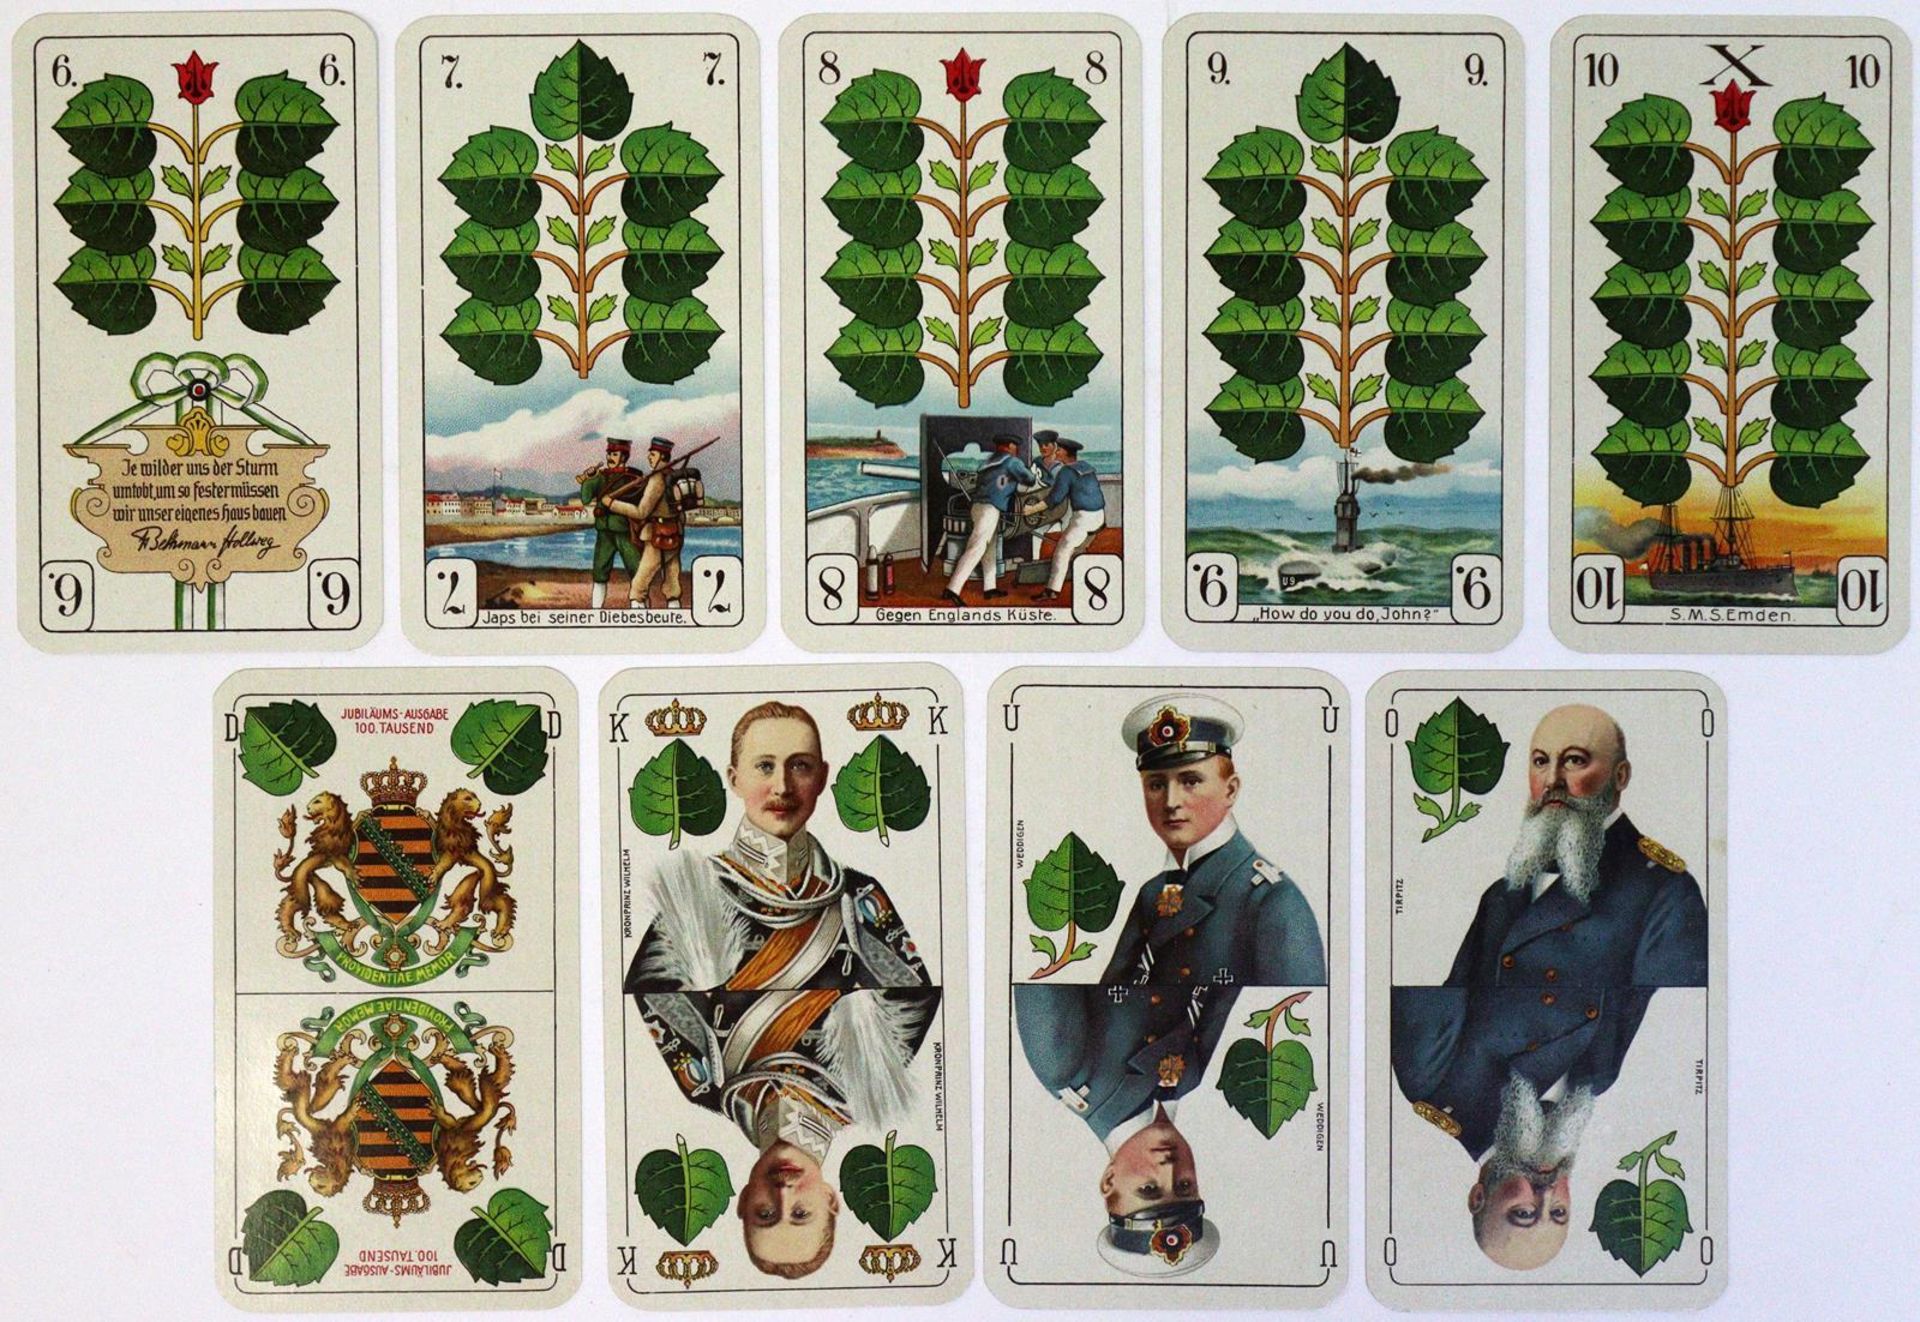 Deutsche Kriegs-Spielkarte. - Image 2 of 7